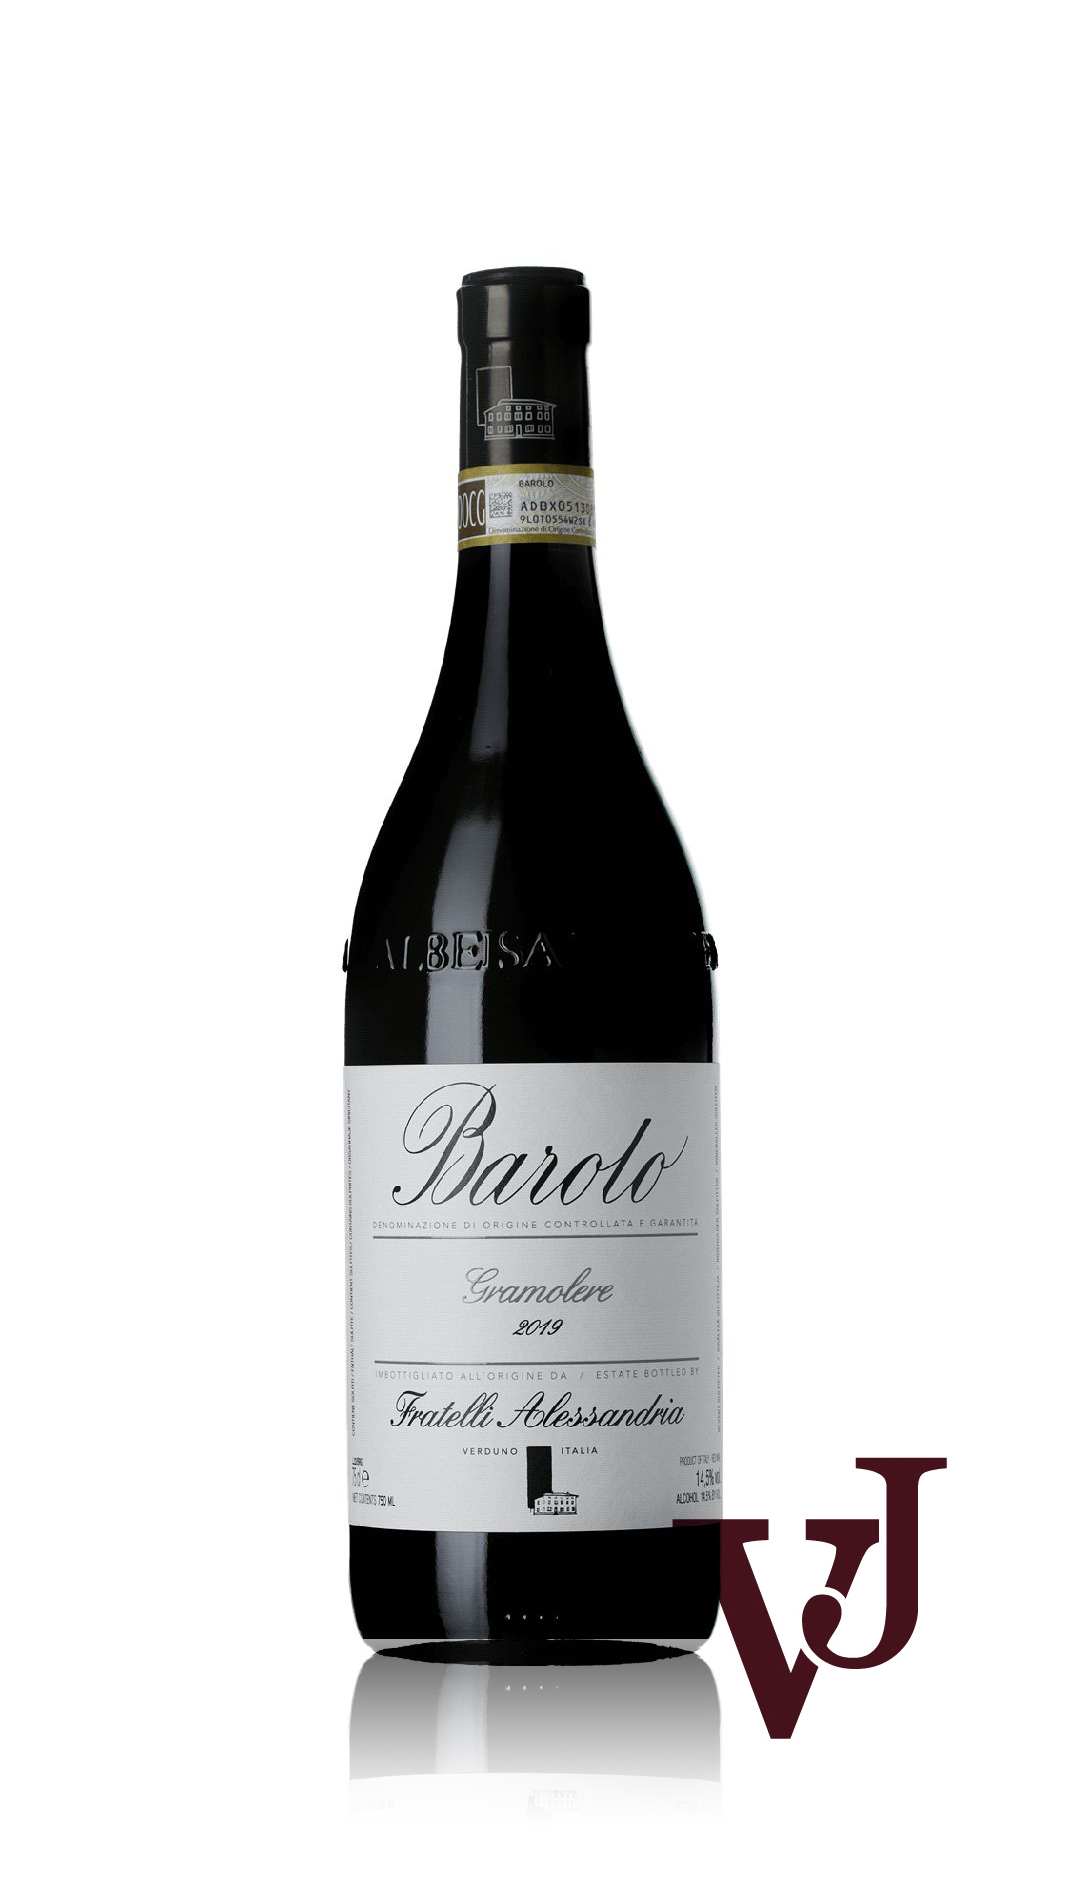 Rött Vin - Barolo Gramolere Fratelli Alessandria 2019 artikel nummer 9402001 från producenten Fratelli Alessandria från Italien